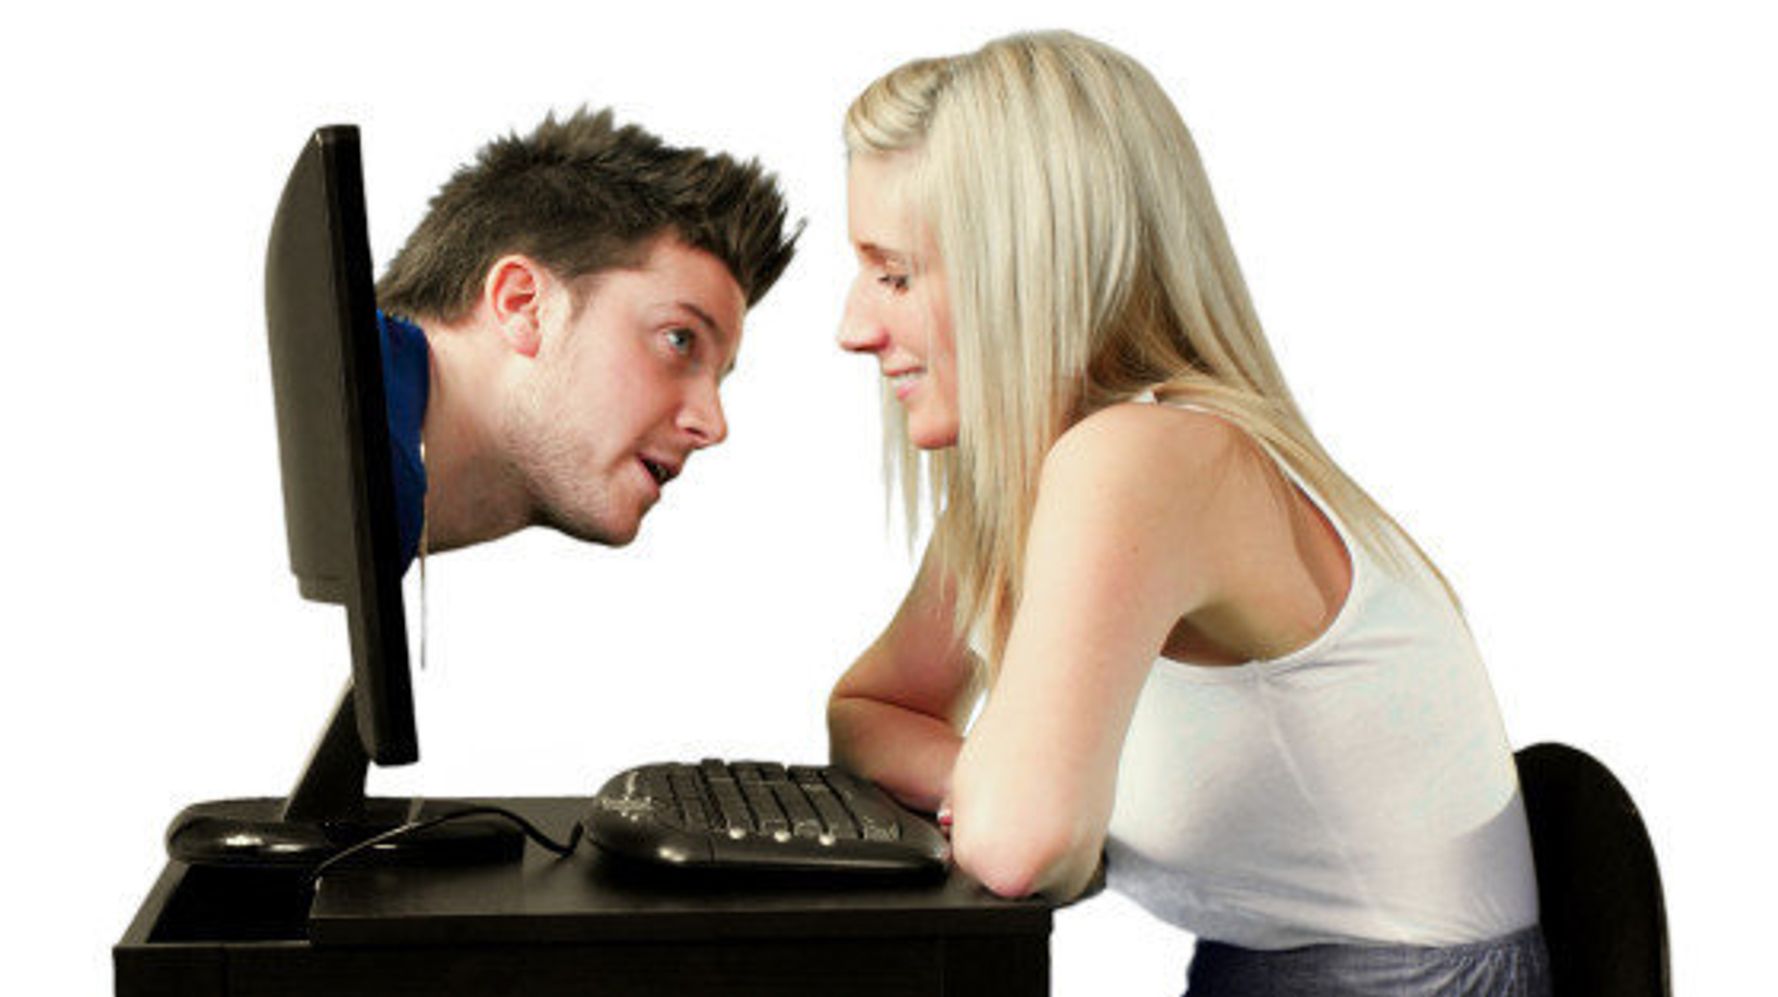 pourquoi un homme marié sinscrit site de rencontre comment ecrire un message sur un site de rencontre